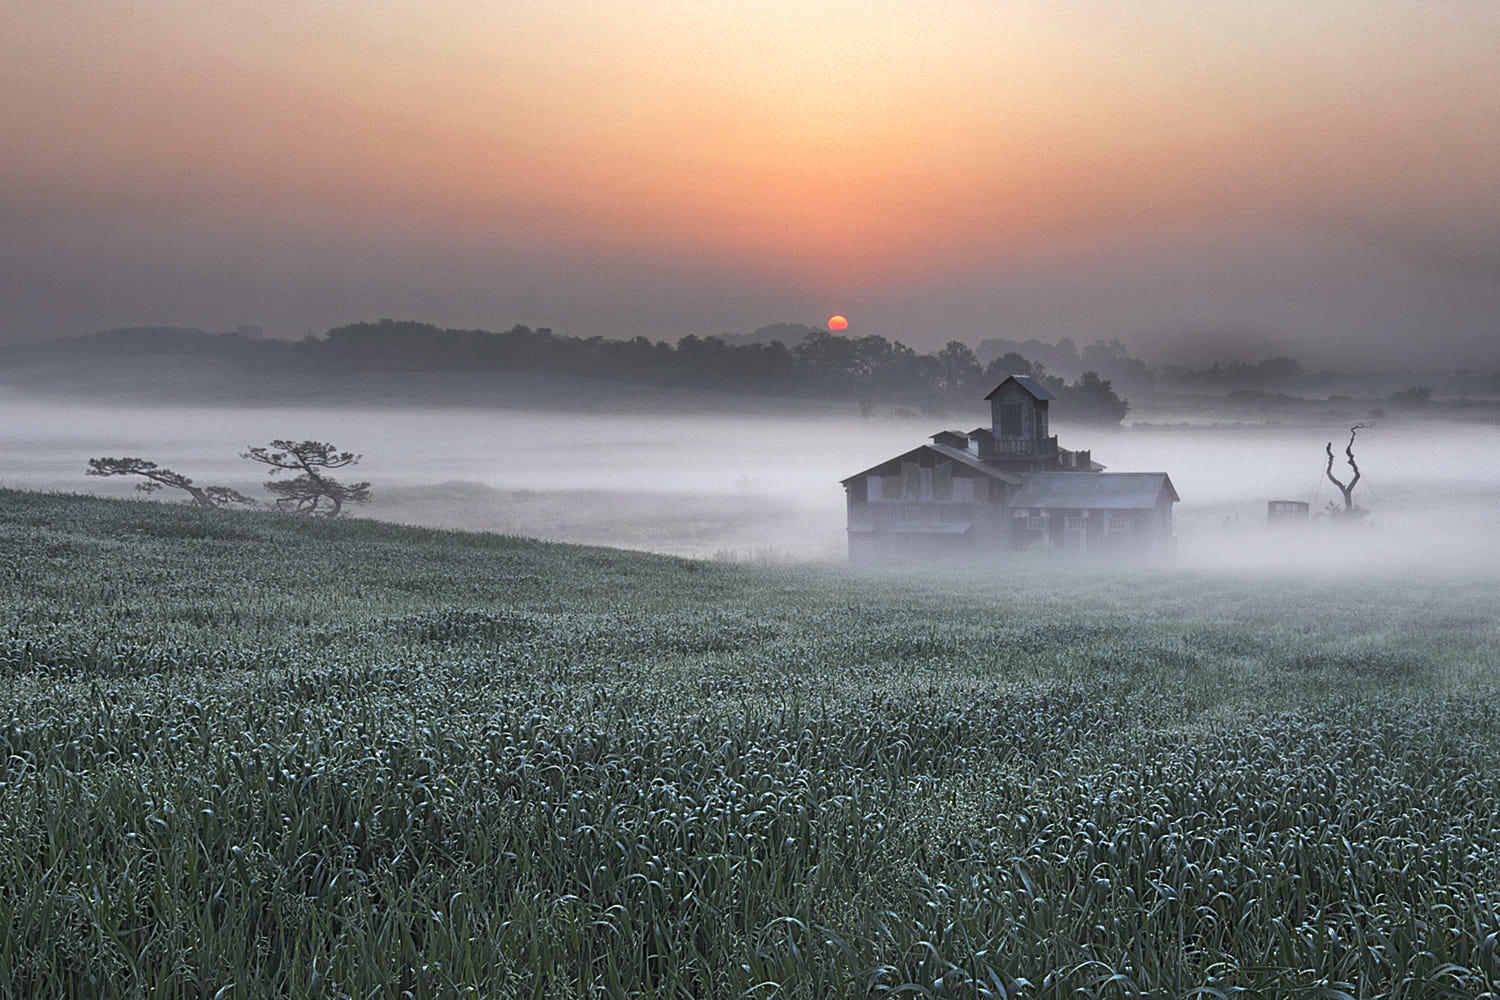 The sunrise of a farm